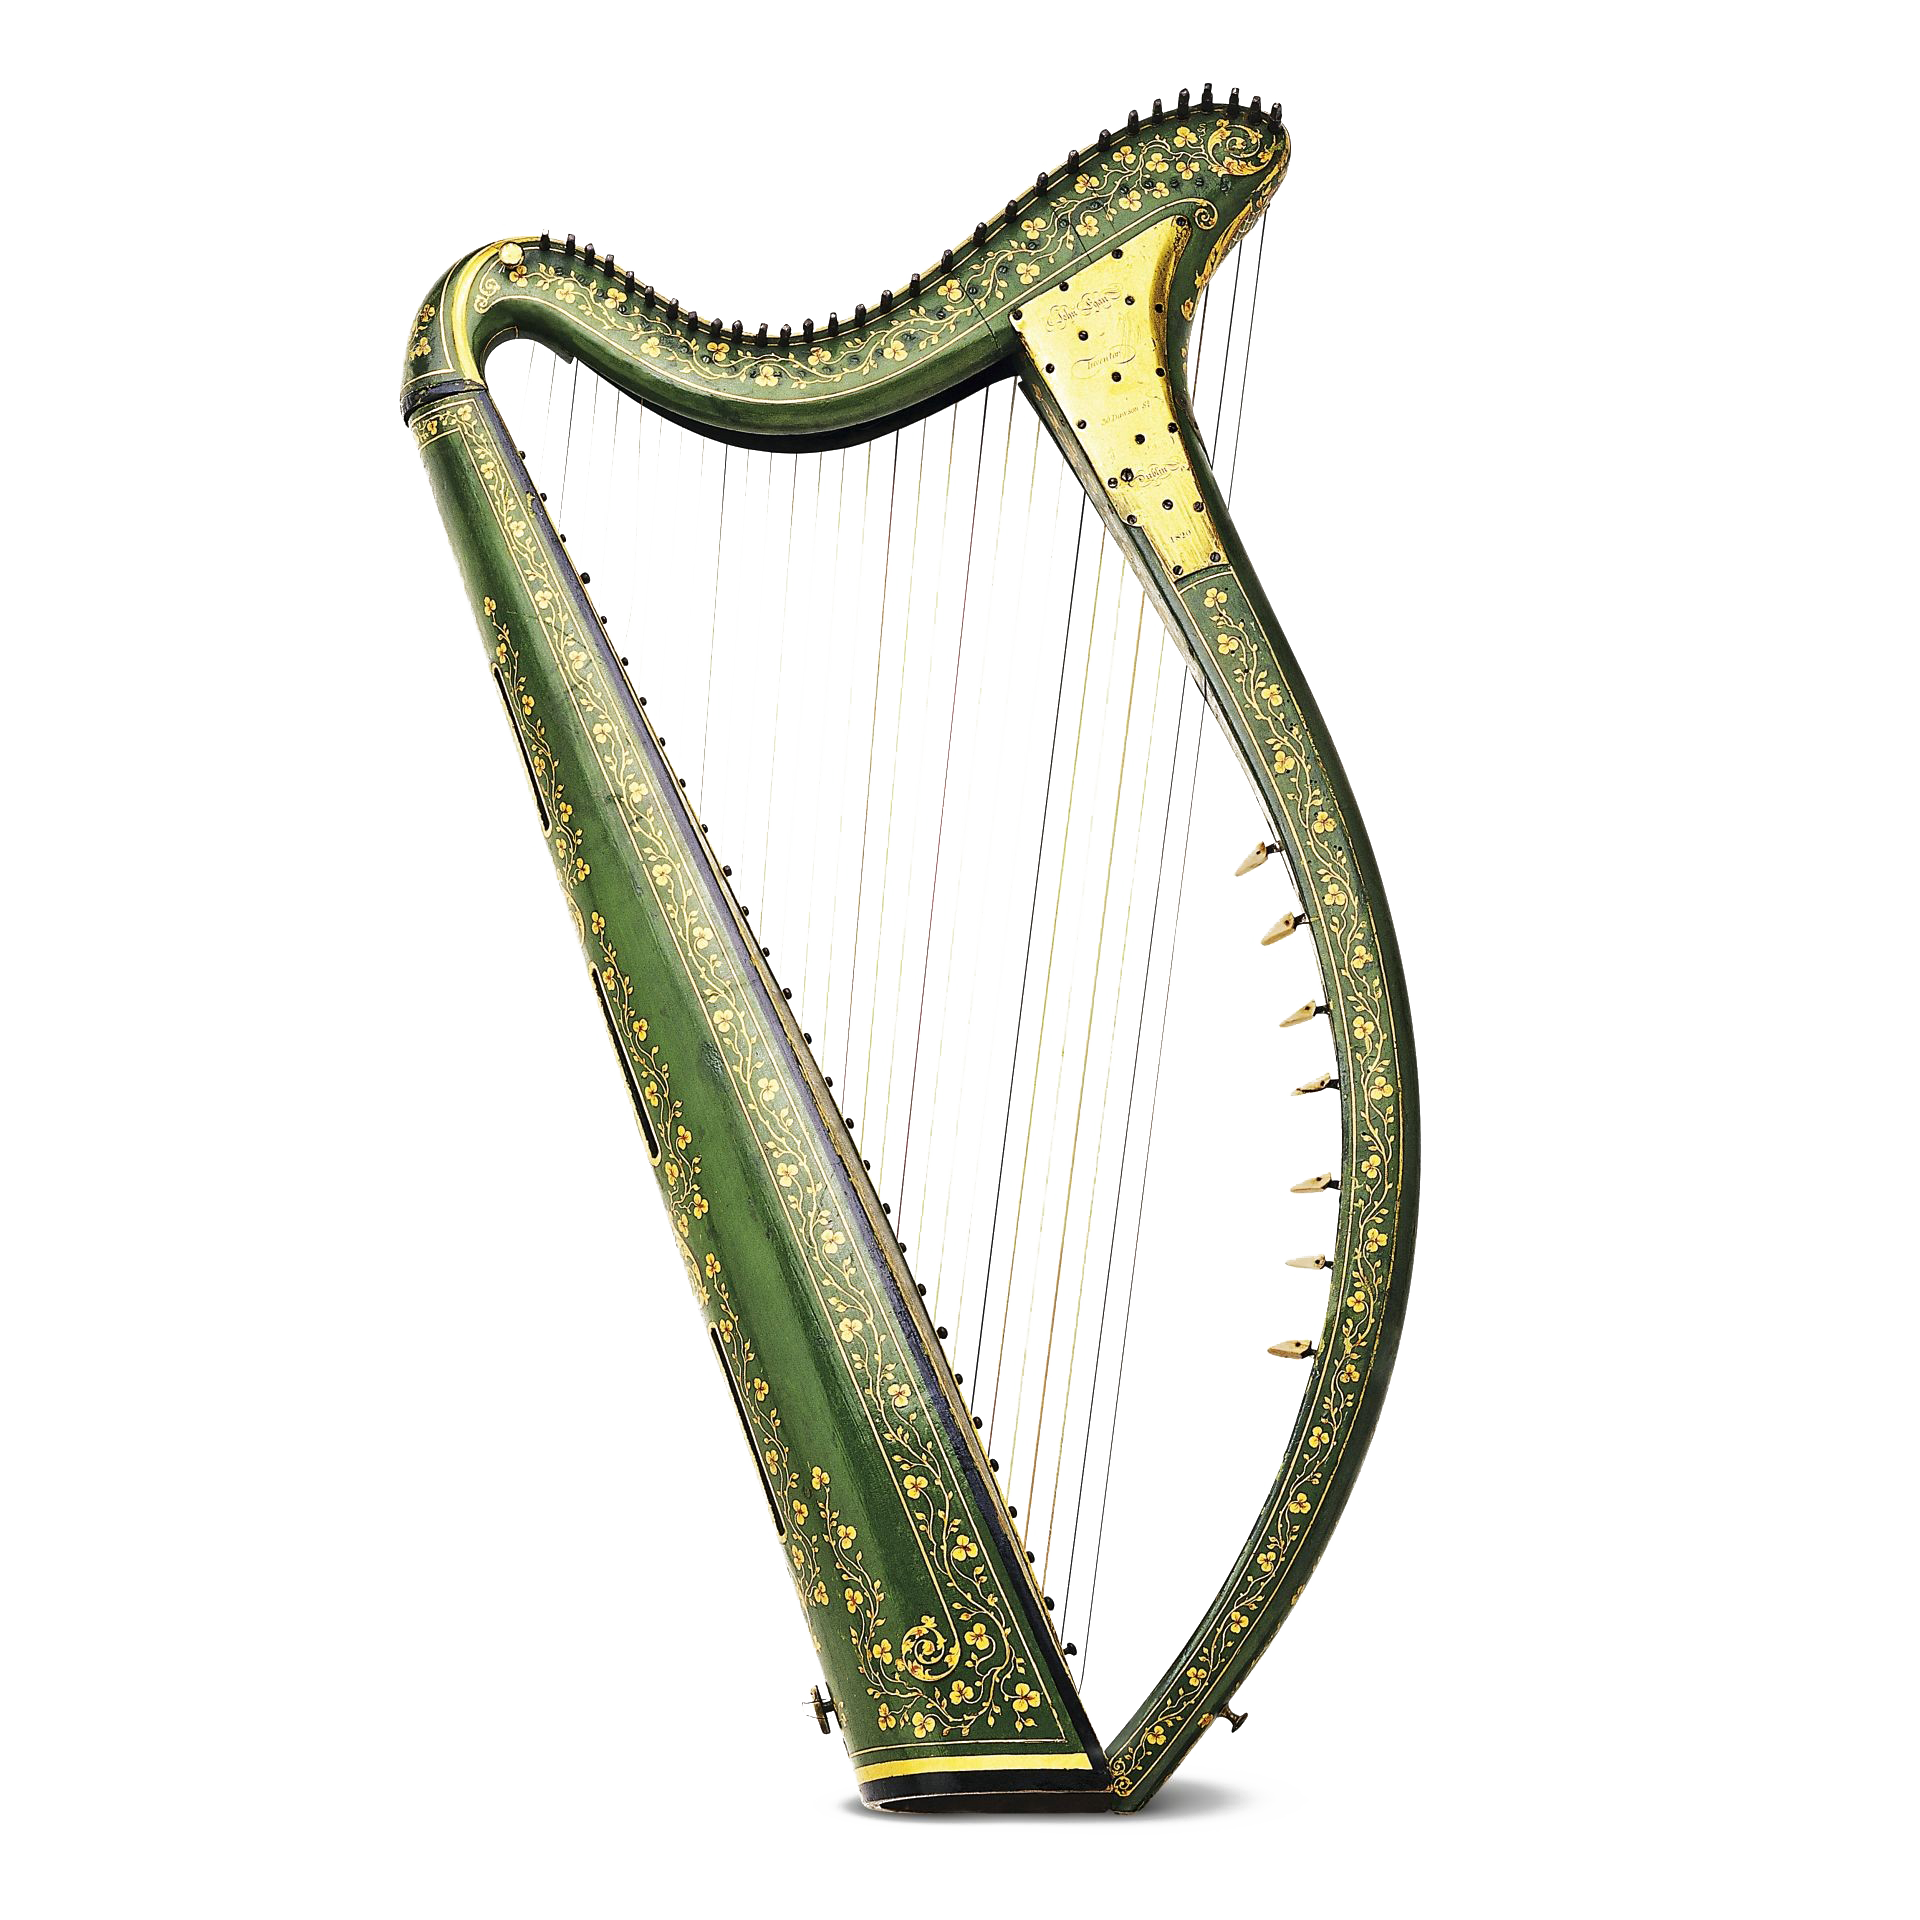 Irish Harp Instrument Transparent Images